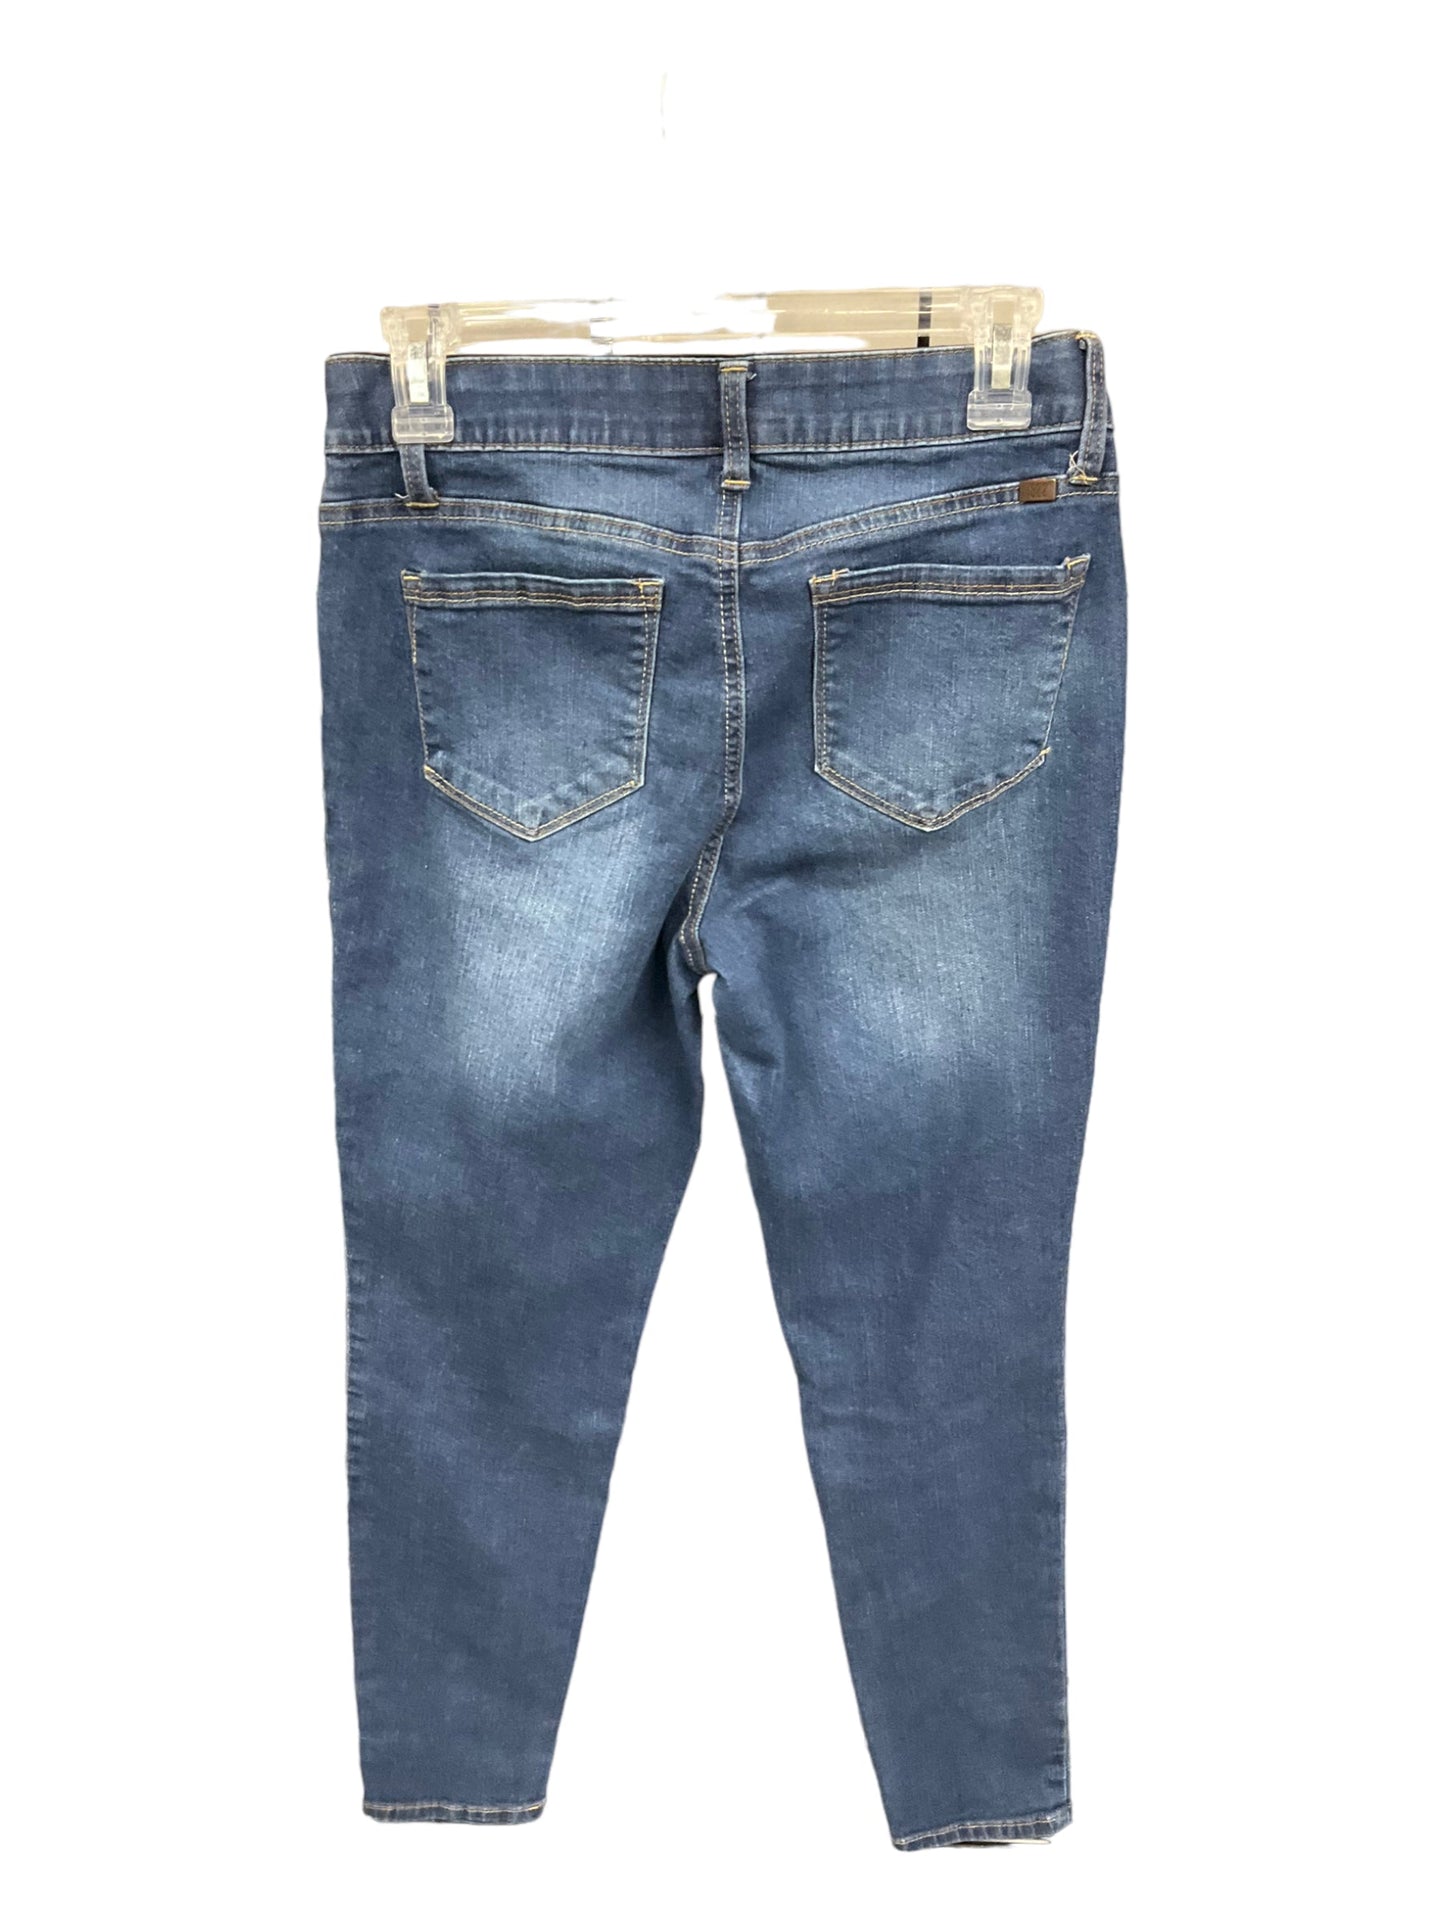 Jeans Skinny By 1822 Denim  Size: S